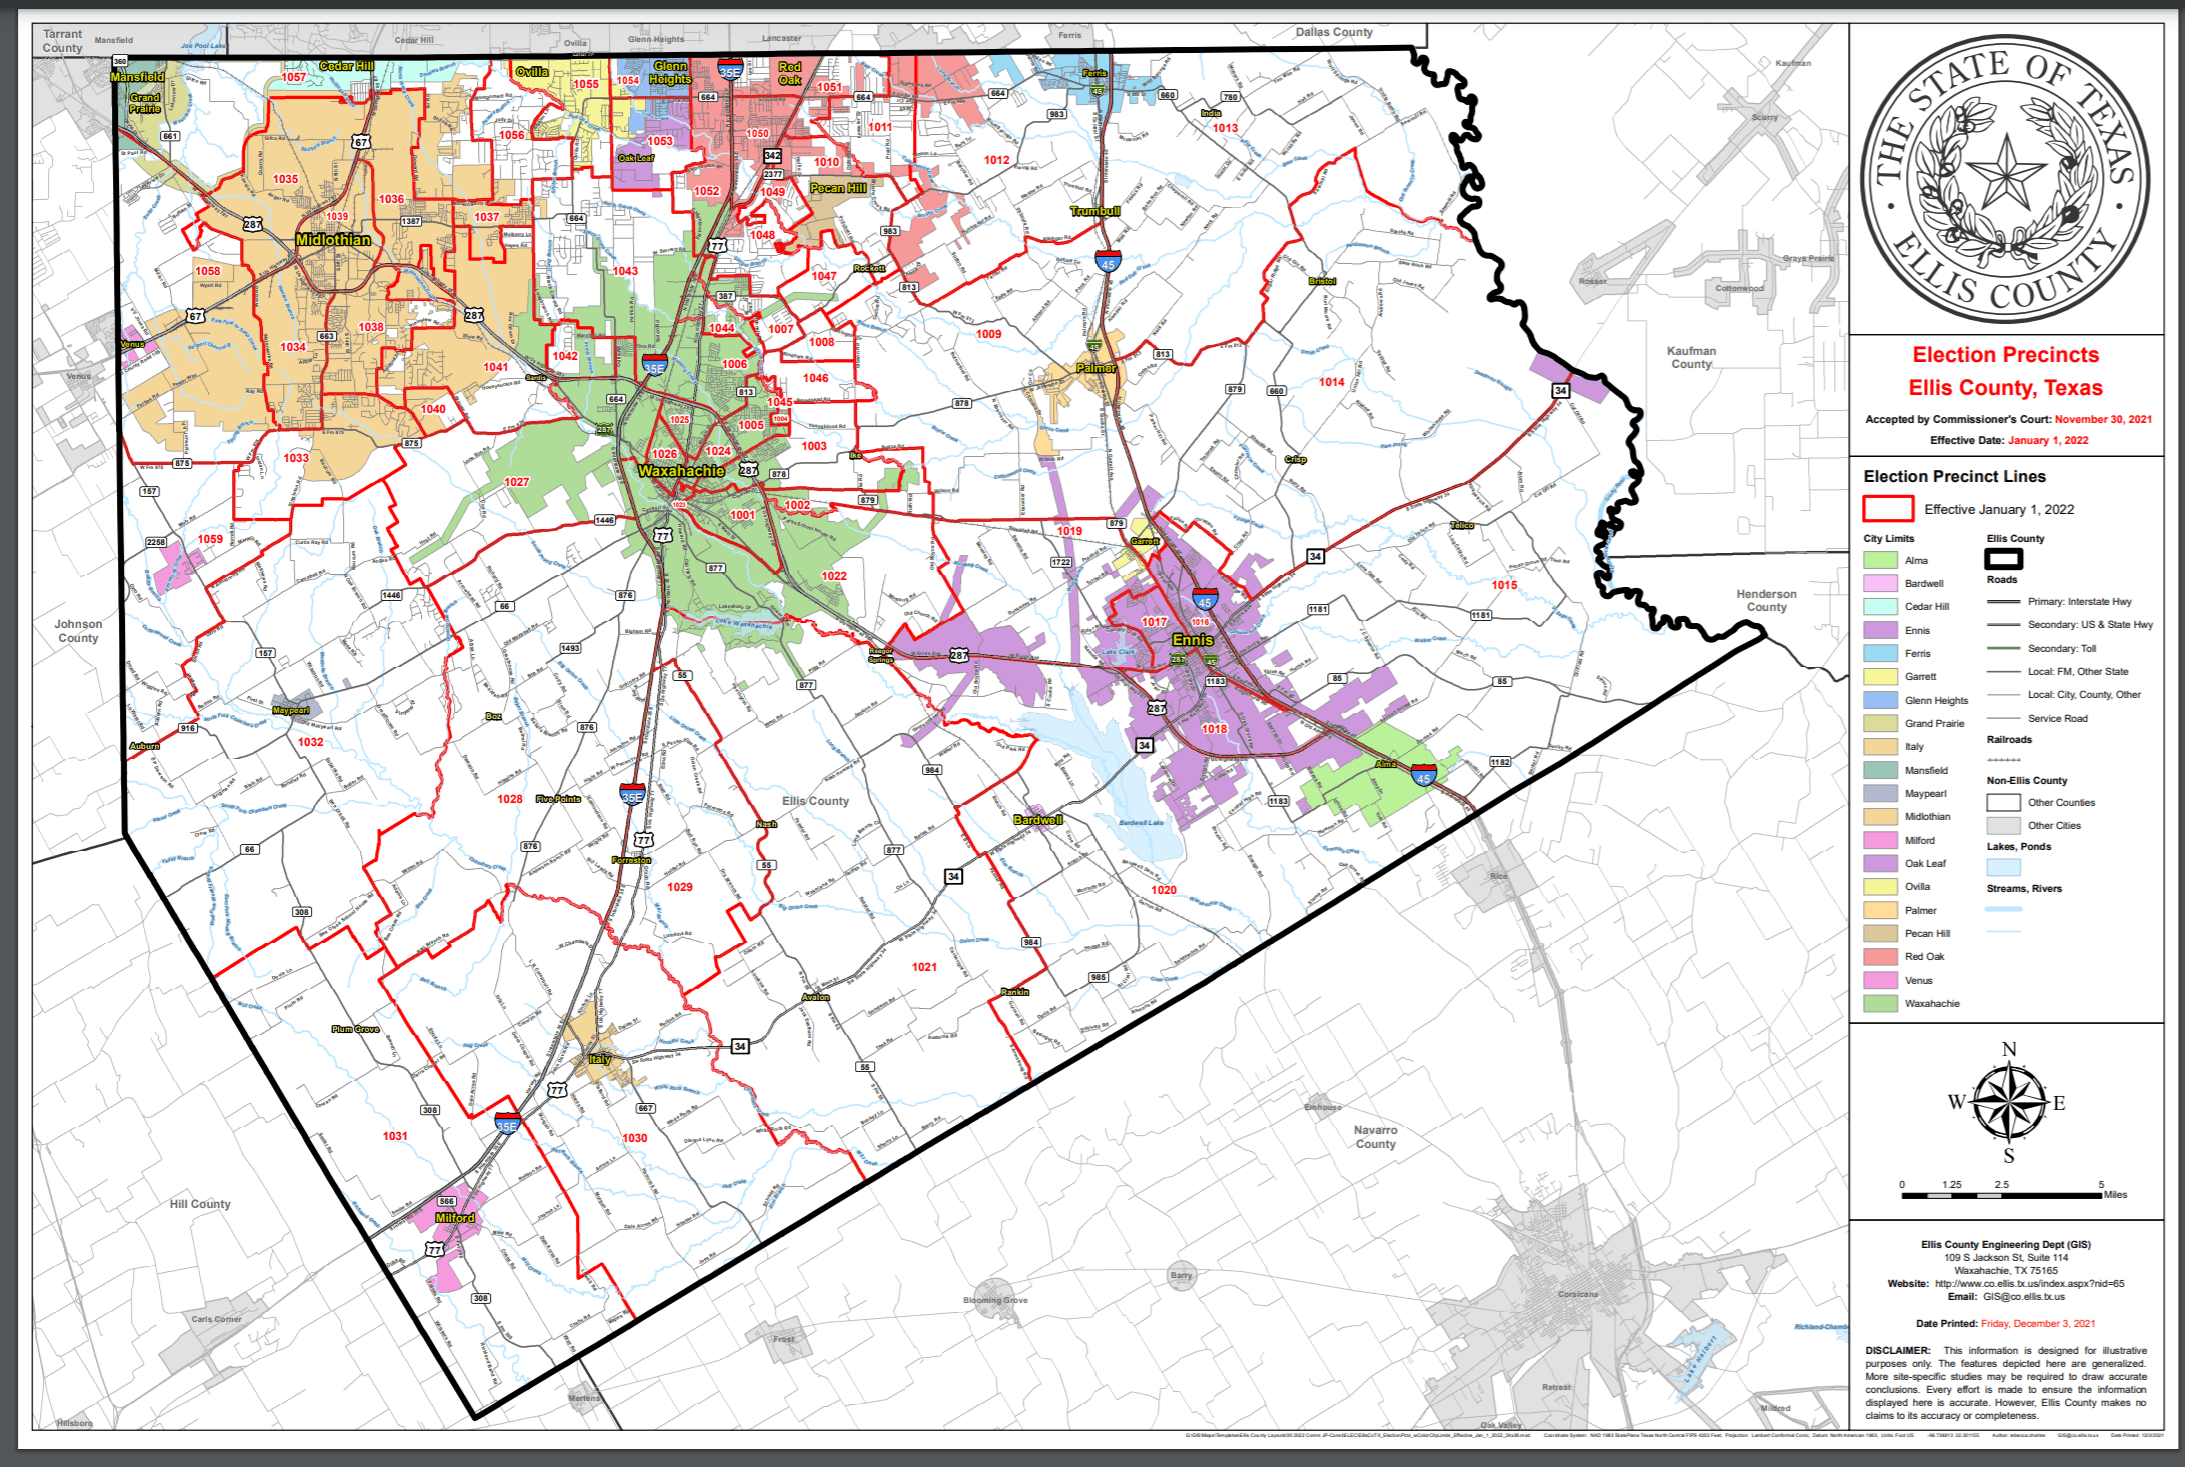 Ellis County election precinct map